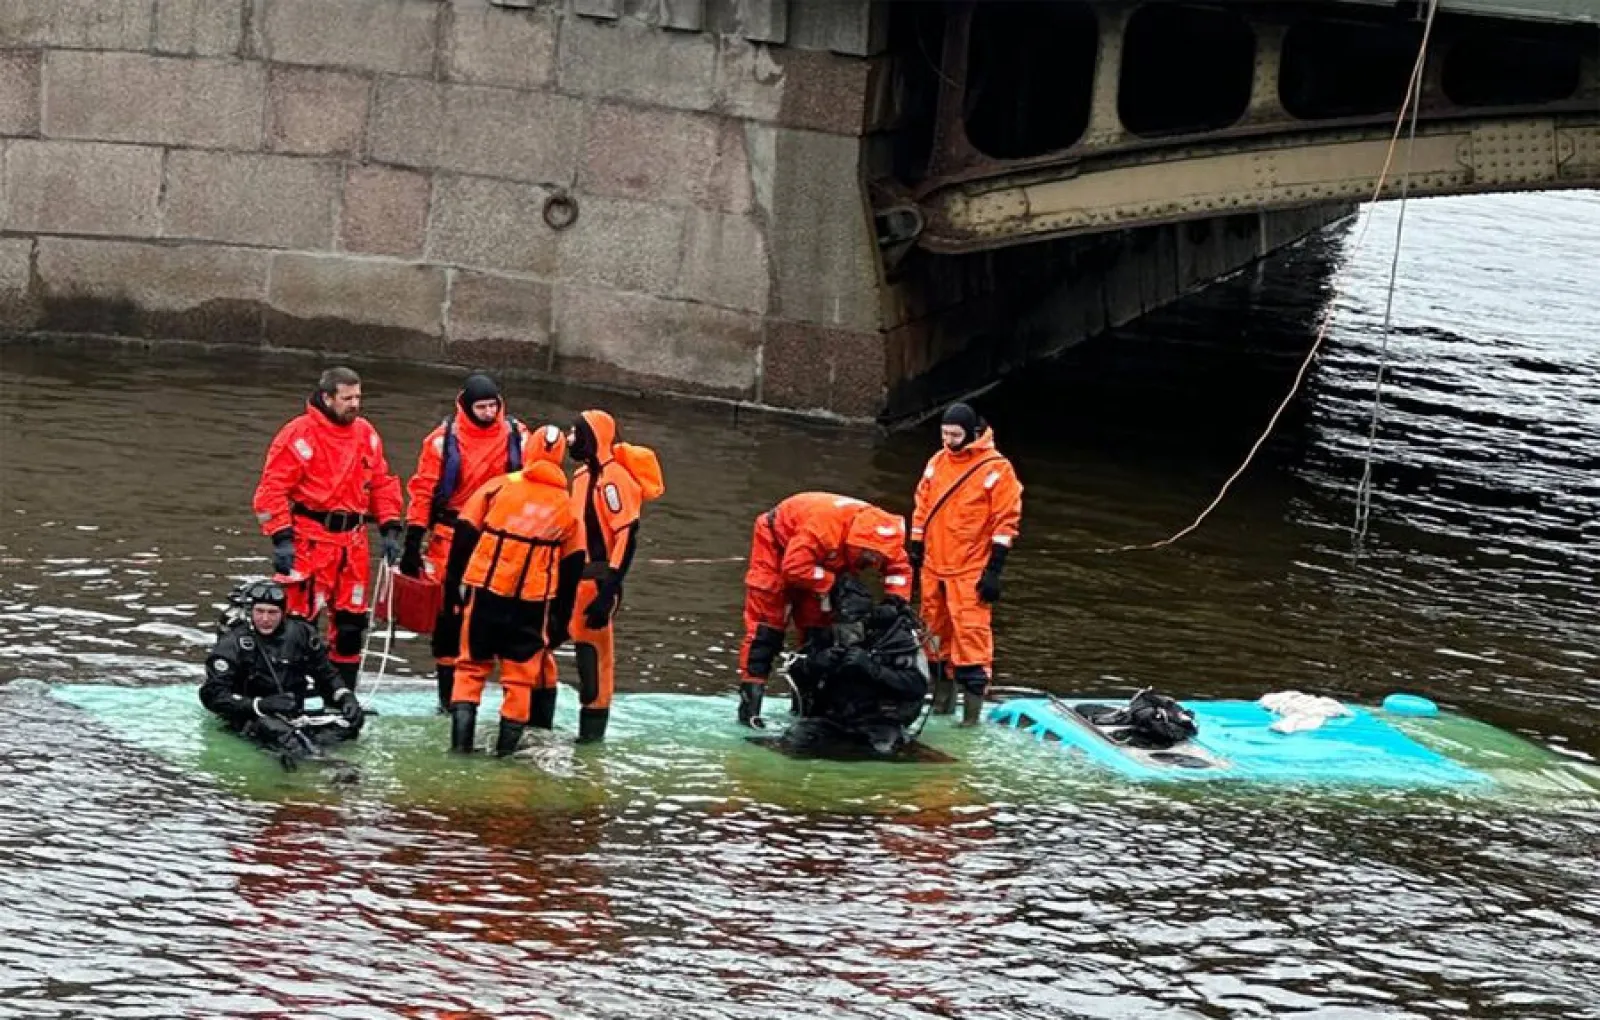 Четыре человека погибли в результате падения в воду автобуса в Санкт-Петербурге